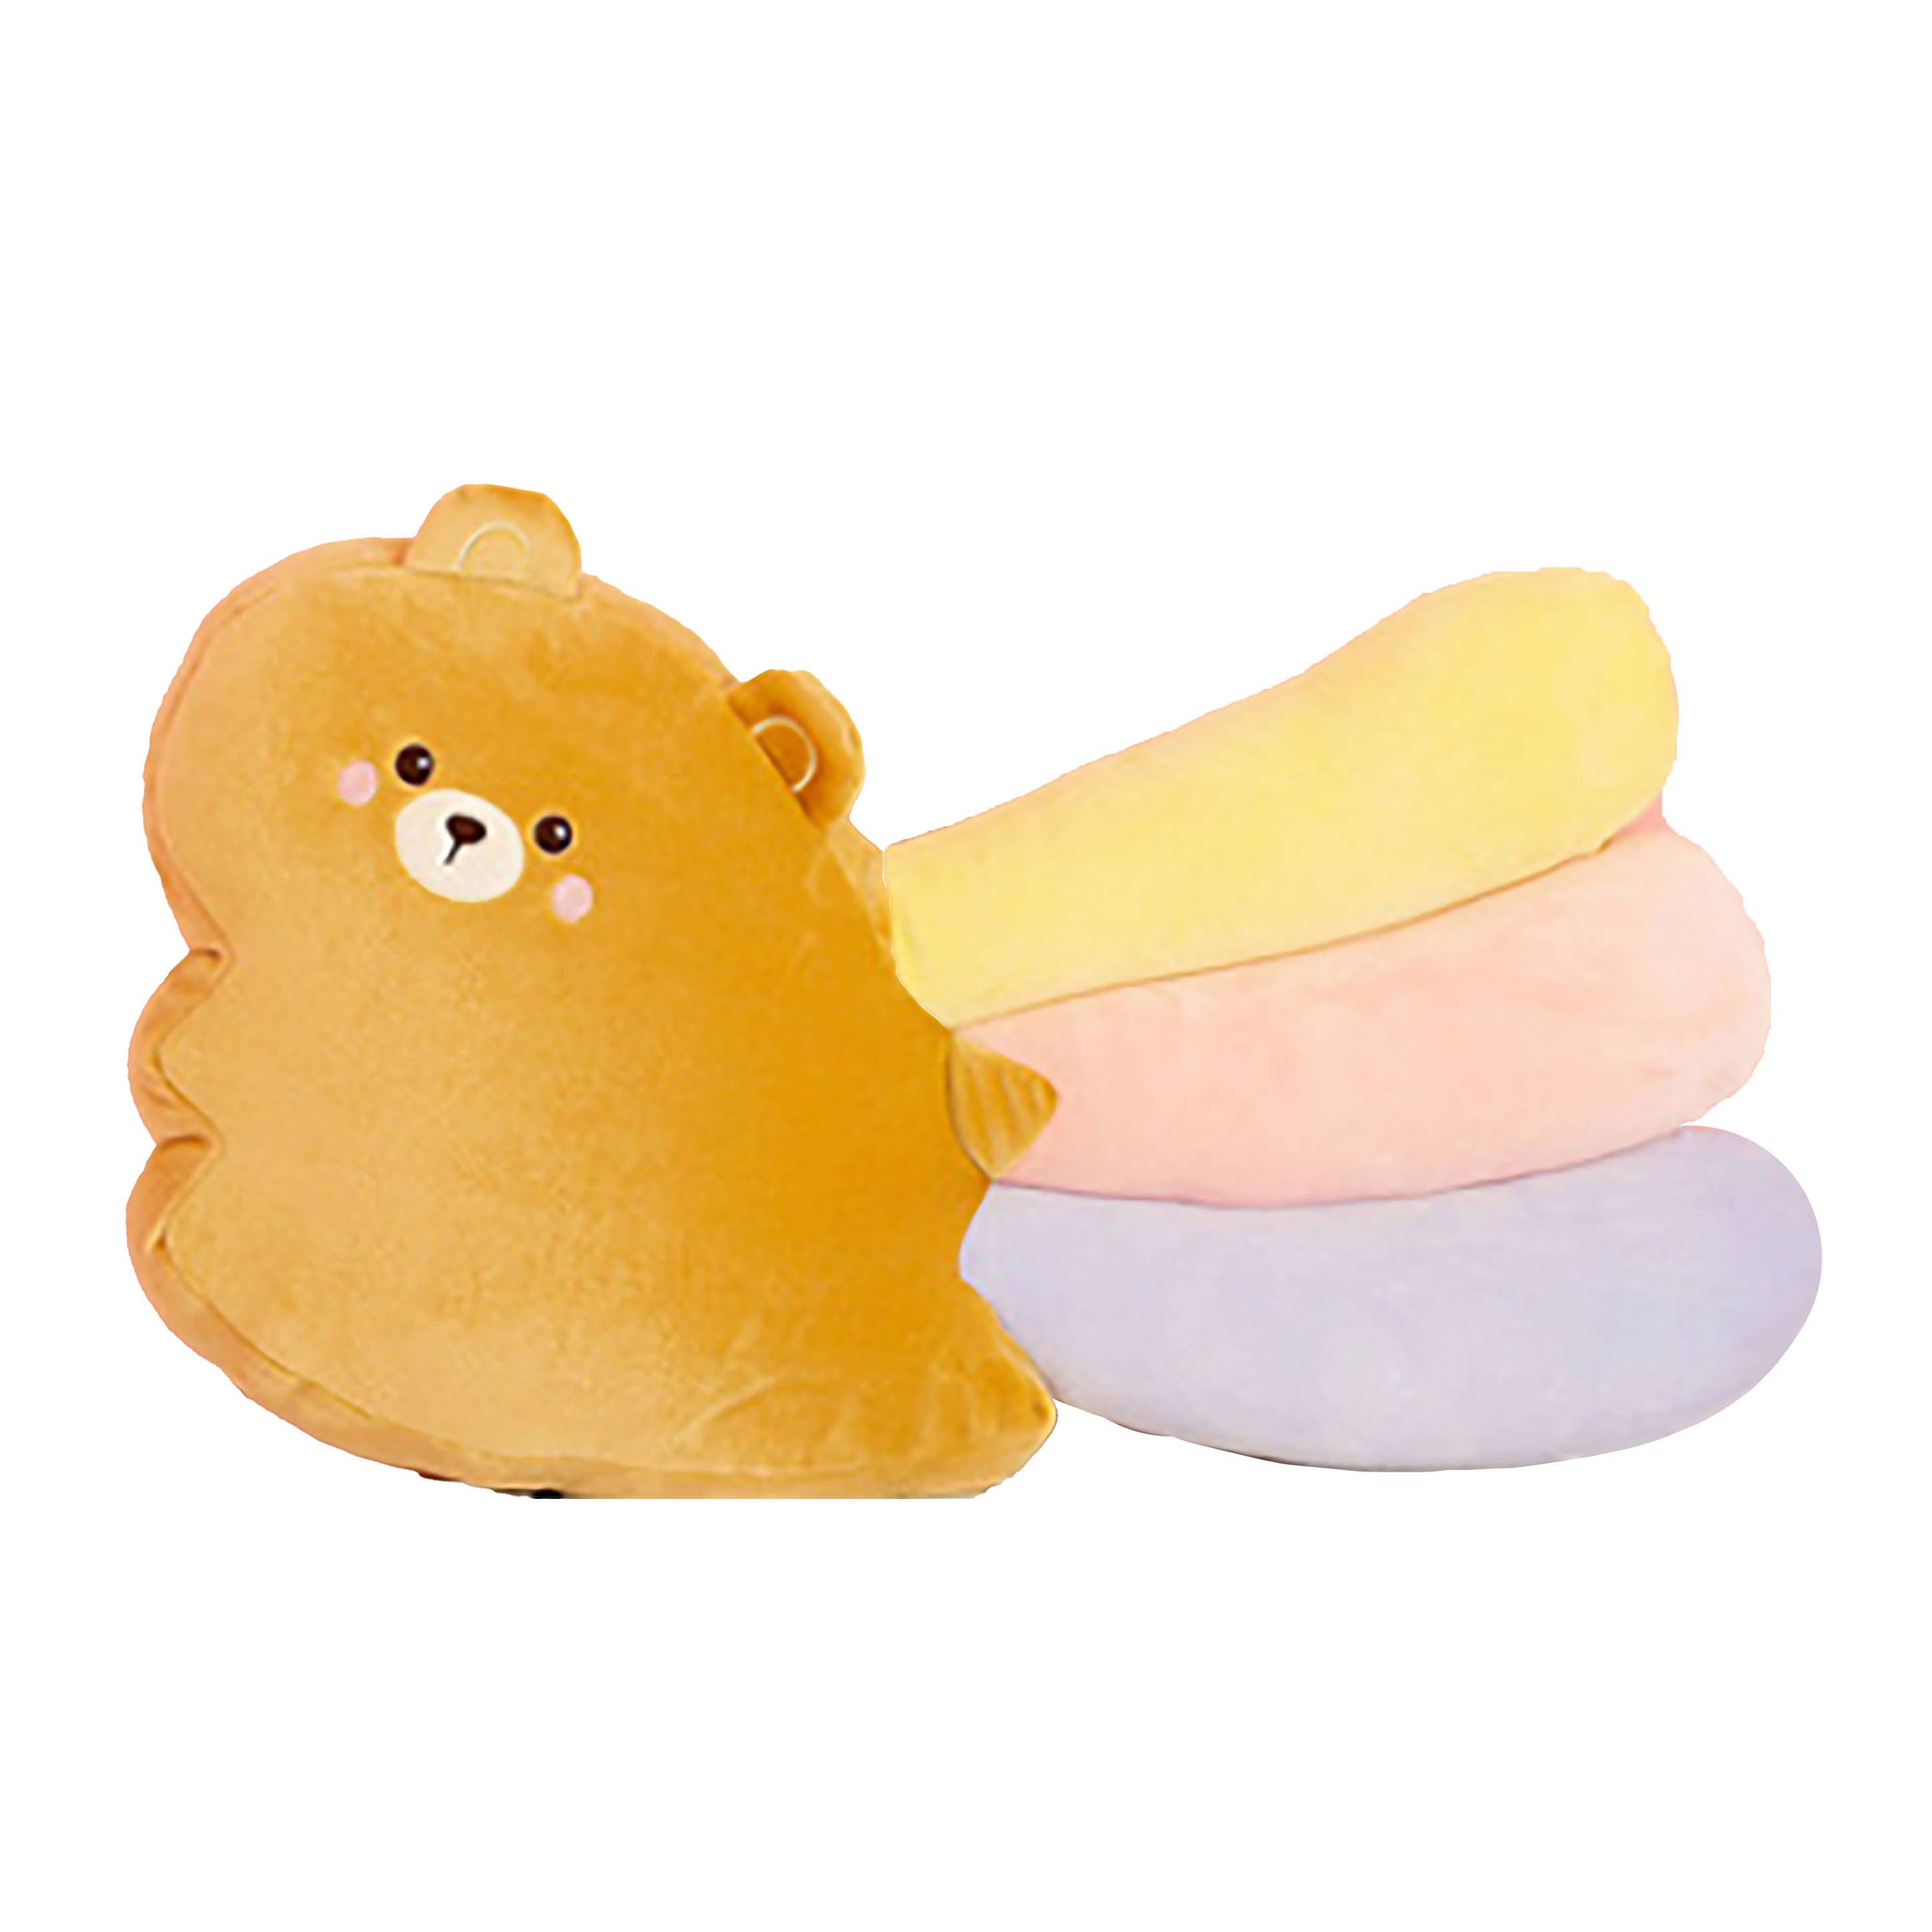 Bewaltz: Shell-O & Gummy Cute Bear Planner